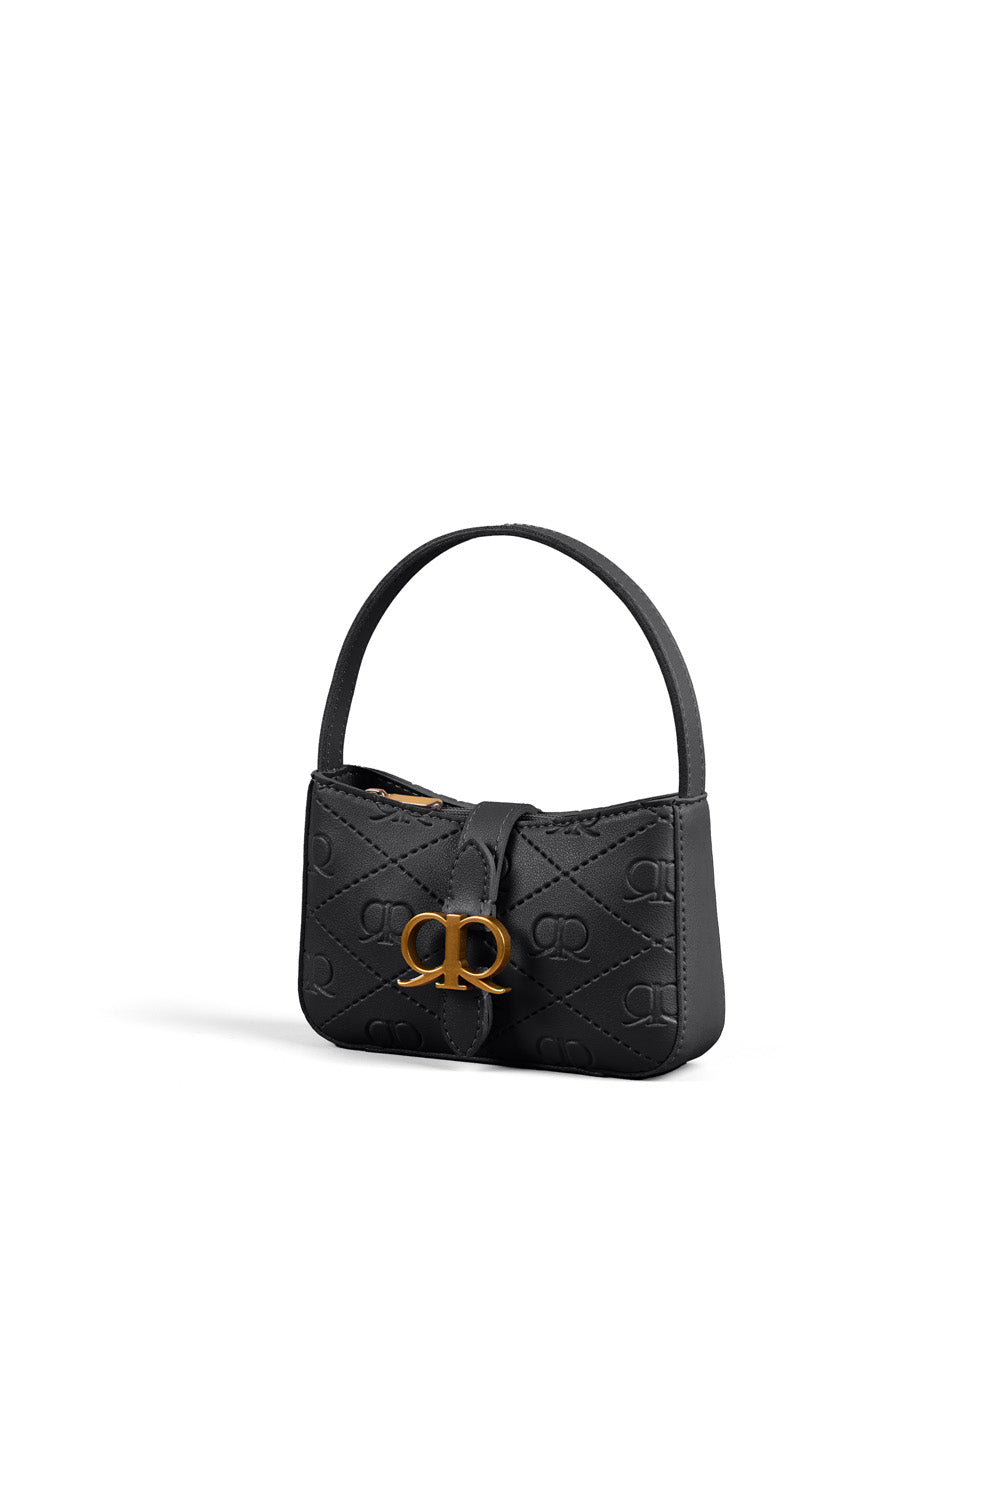 RR Juliet Mini Bag in Black